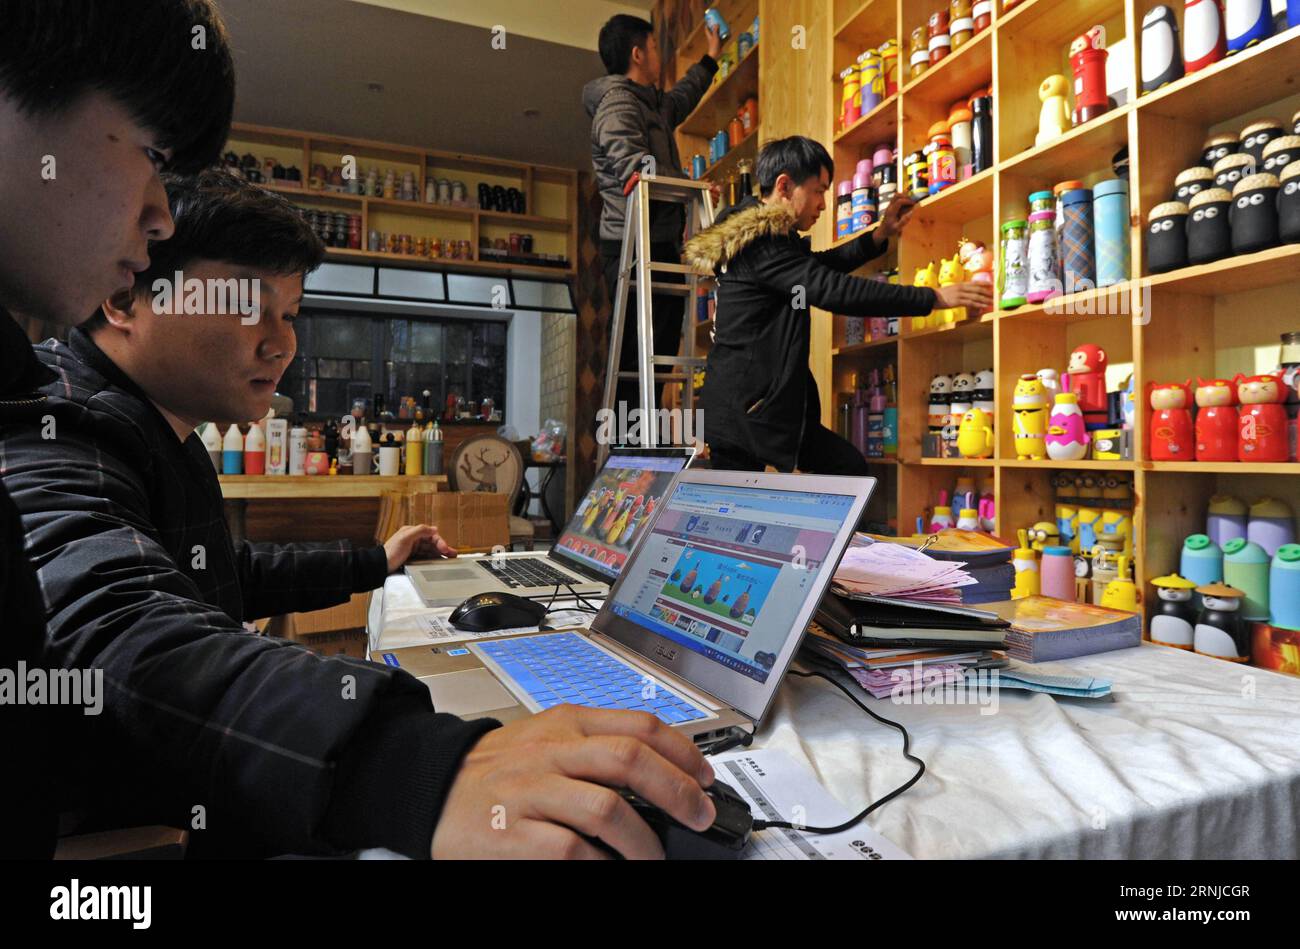 (170116) -- HANGZHOU, 16. Januar 2017 -- Mitarbeiter eines Online-Shops verarbeiten Bestellungen im Dorf Qingyanliu der Stadt Yiwu, ostchinesische Provinz Zhejiang, 3. Januar 2017. Nach Angaben des Handelsministeriums der Provinz Zhejiang gaben die Verbraucher 2016 mehr als 1 Billion Yuan (149,4 Milliarden US-Dollar) für Online-Shops aus Zhejiang aus, was einem Anstieg von 35,43 Prozent gegenüber dem Vorjahr entspricht. ) (wx) CHINA-ZHEJIANG-E-COMMERCE SPENDINGS-TRILLION (CN) TanxJin PUBLICATIONxNOTxINxCHN Hangzhou Jan 16 2017 Mitarbeiter von To Online Store verarbeiten Bestellungen im Dorf Qingyanliu der Stadt Yiwu Ostchina S Provinz Zhejiang Ja Stockfoto